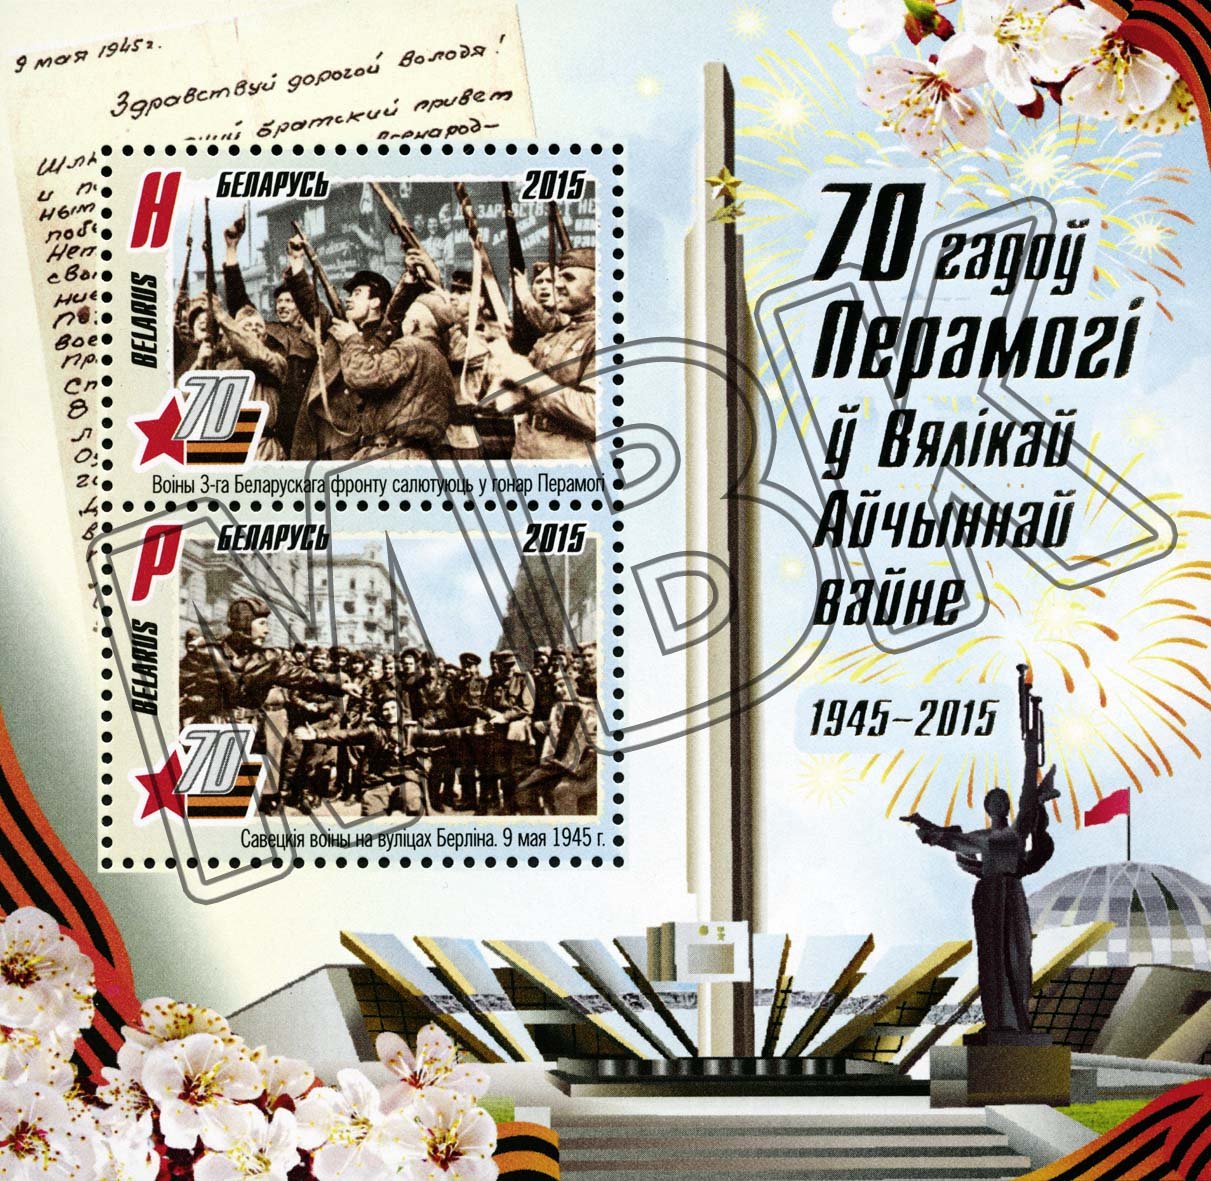 Briefmarke "70 Jahre Sieg im Großen Vaterländischen Krieg", Belarus, 2015 (Museum Berlin-Karlshorst CC BY-NC-SA)